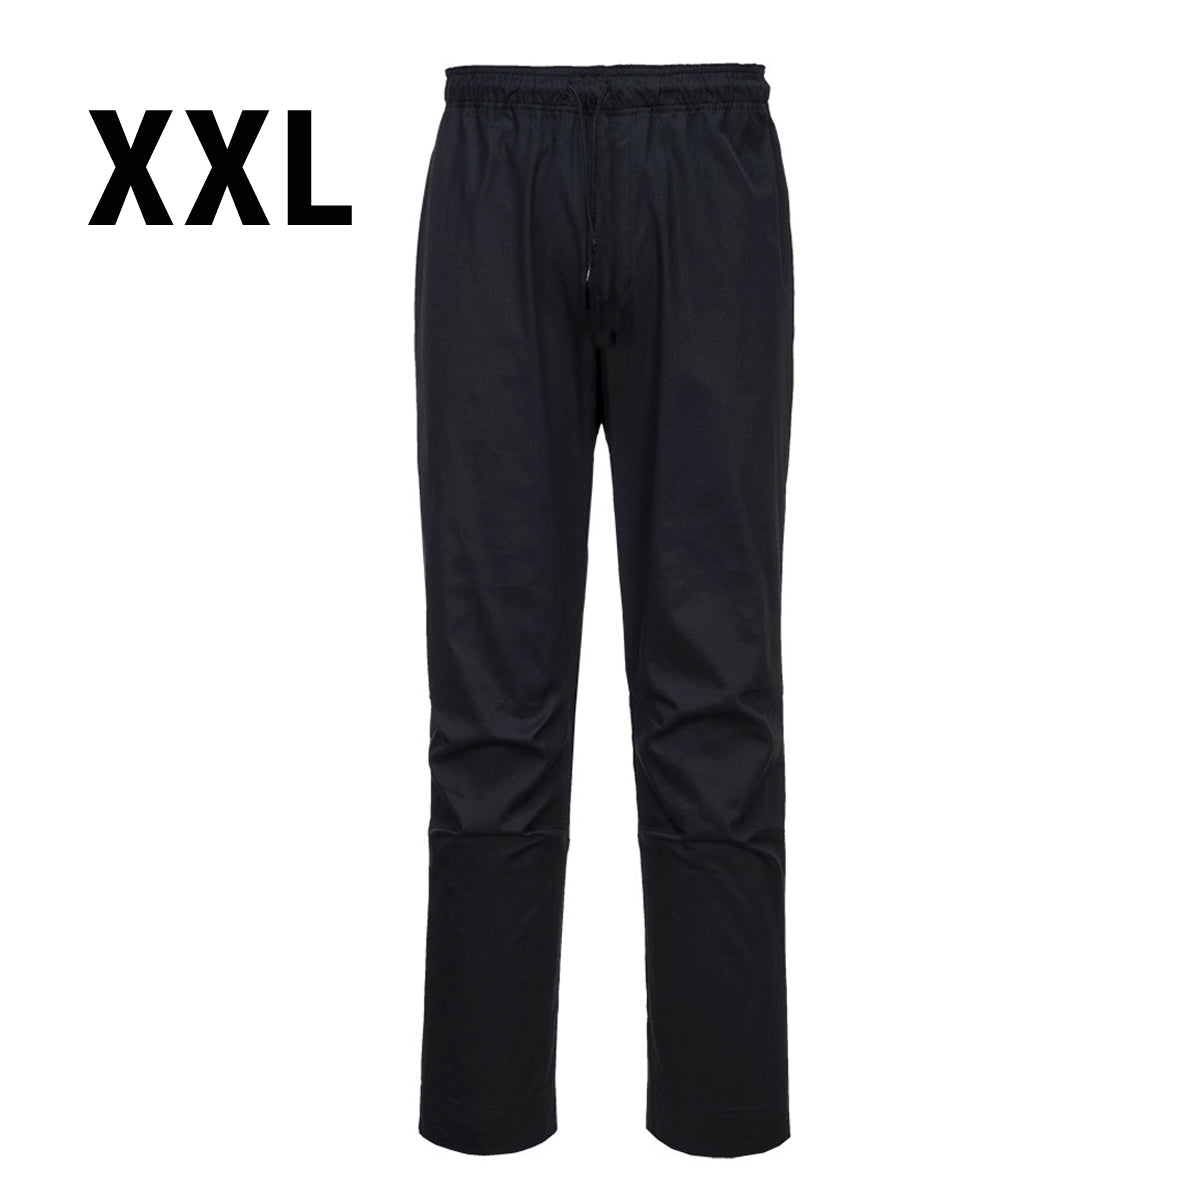 MeshAir Pro bukse - Svart - Størrelse: XXL